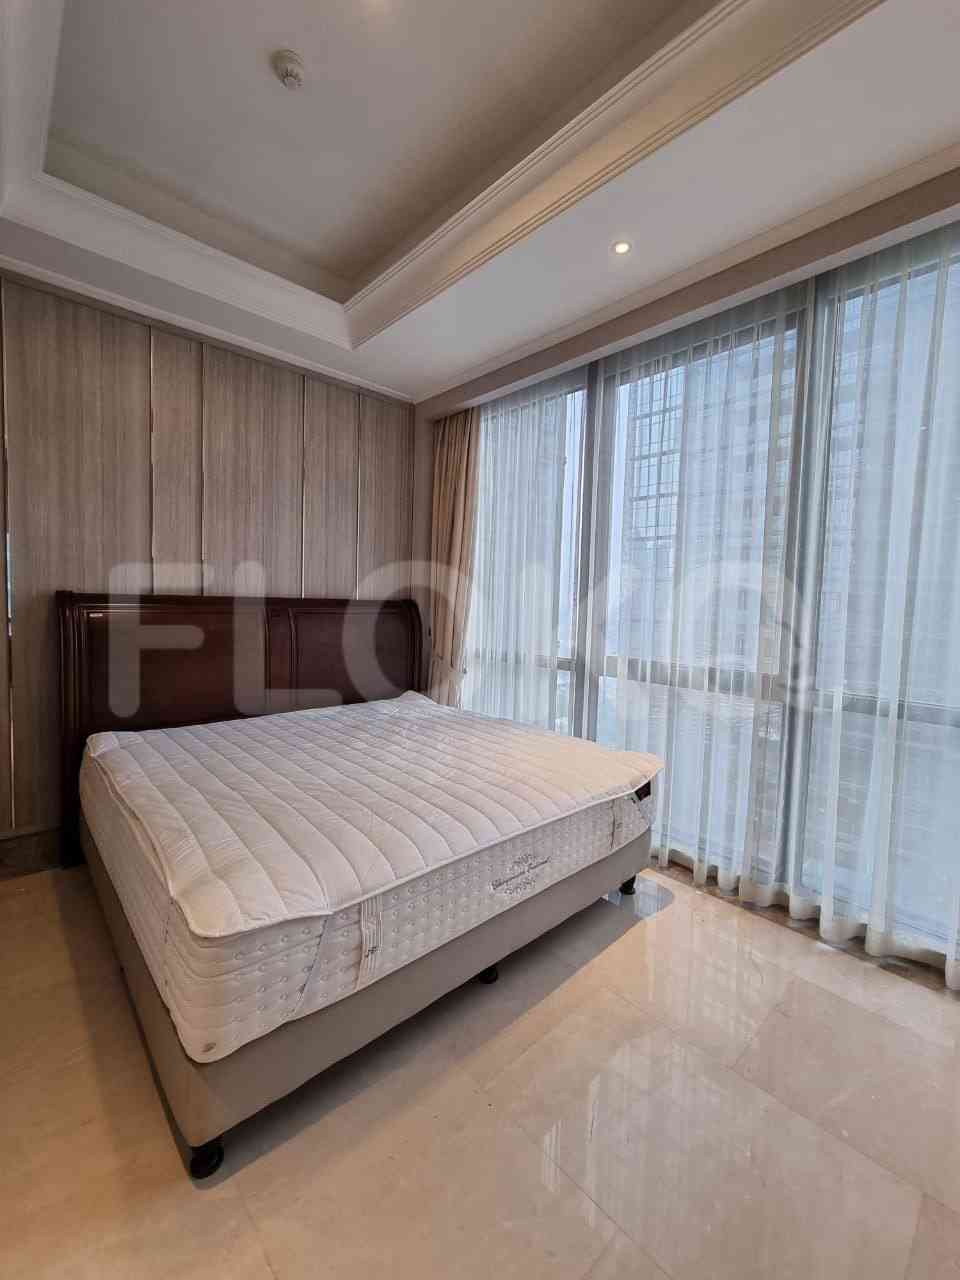 2 Bedroom on 21st Floor for Rent in District 8 - fsec20 7